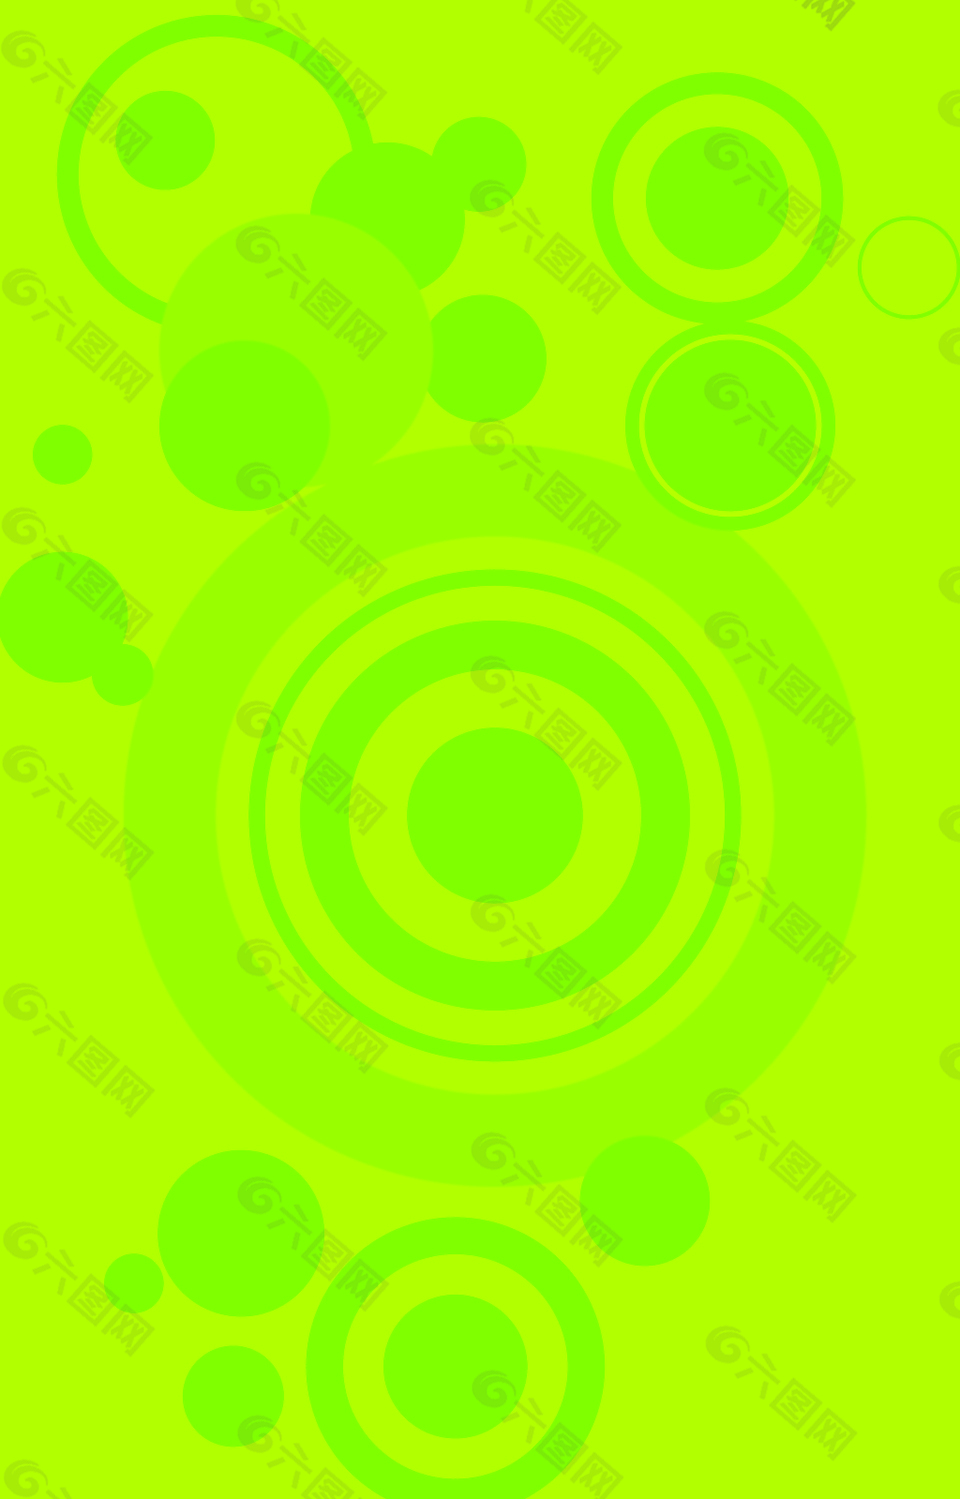 绿色圆圈背景素材背景素材免费下载(图片编号:8928282)